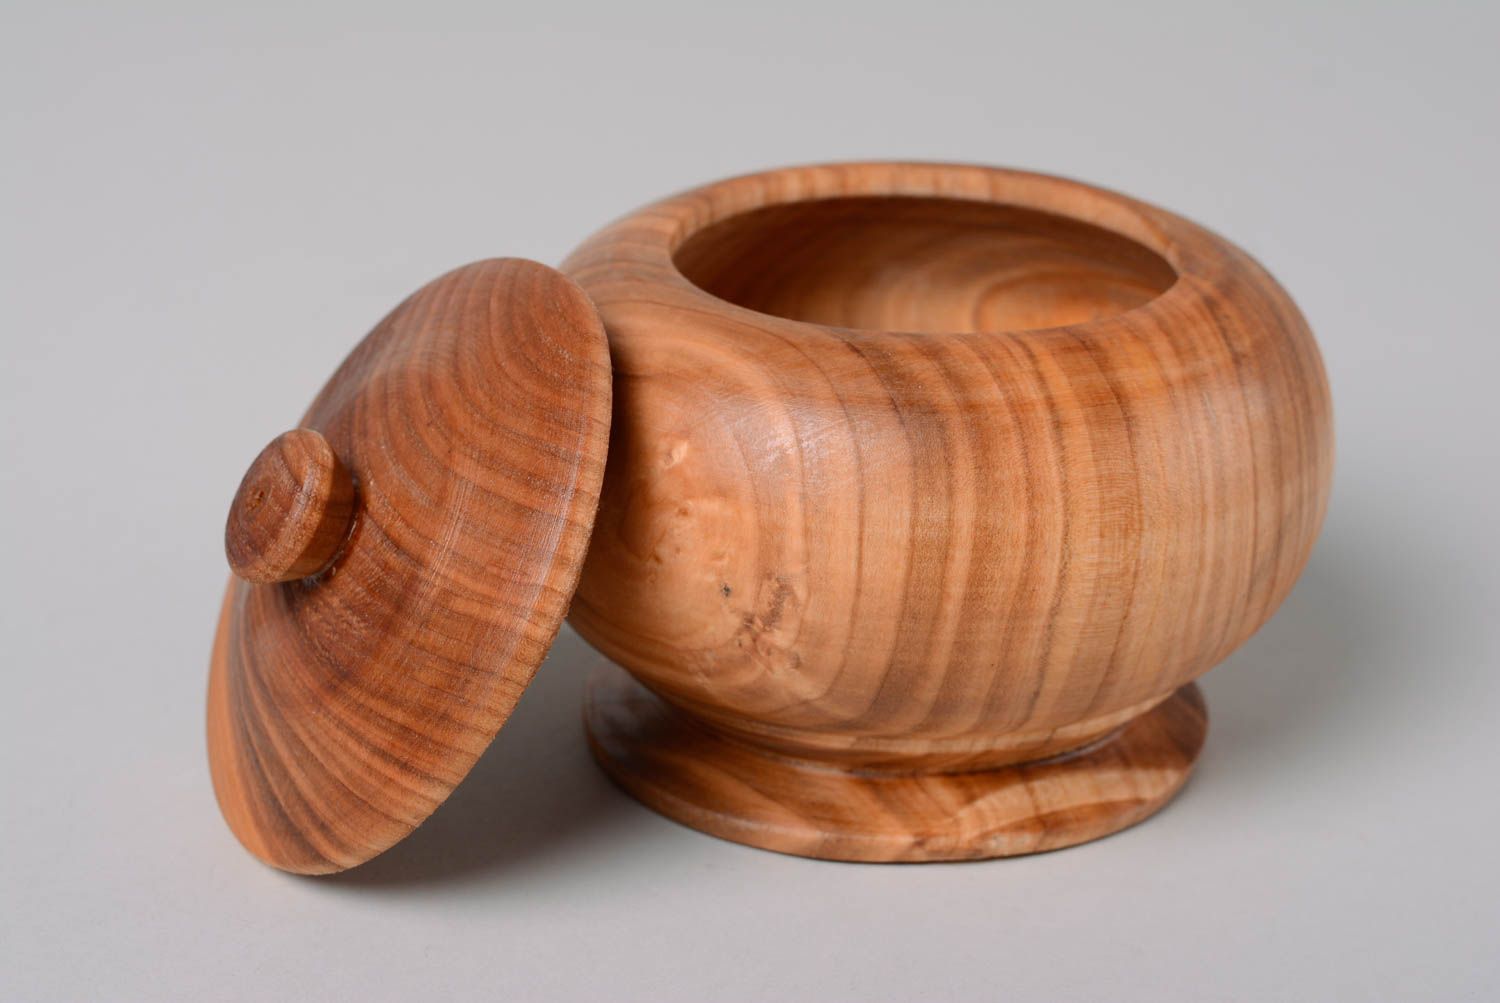 Wooden decorative pot with lid for kitchen décor 0,7 lb photo 2